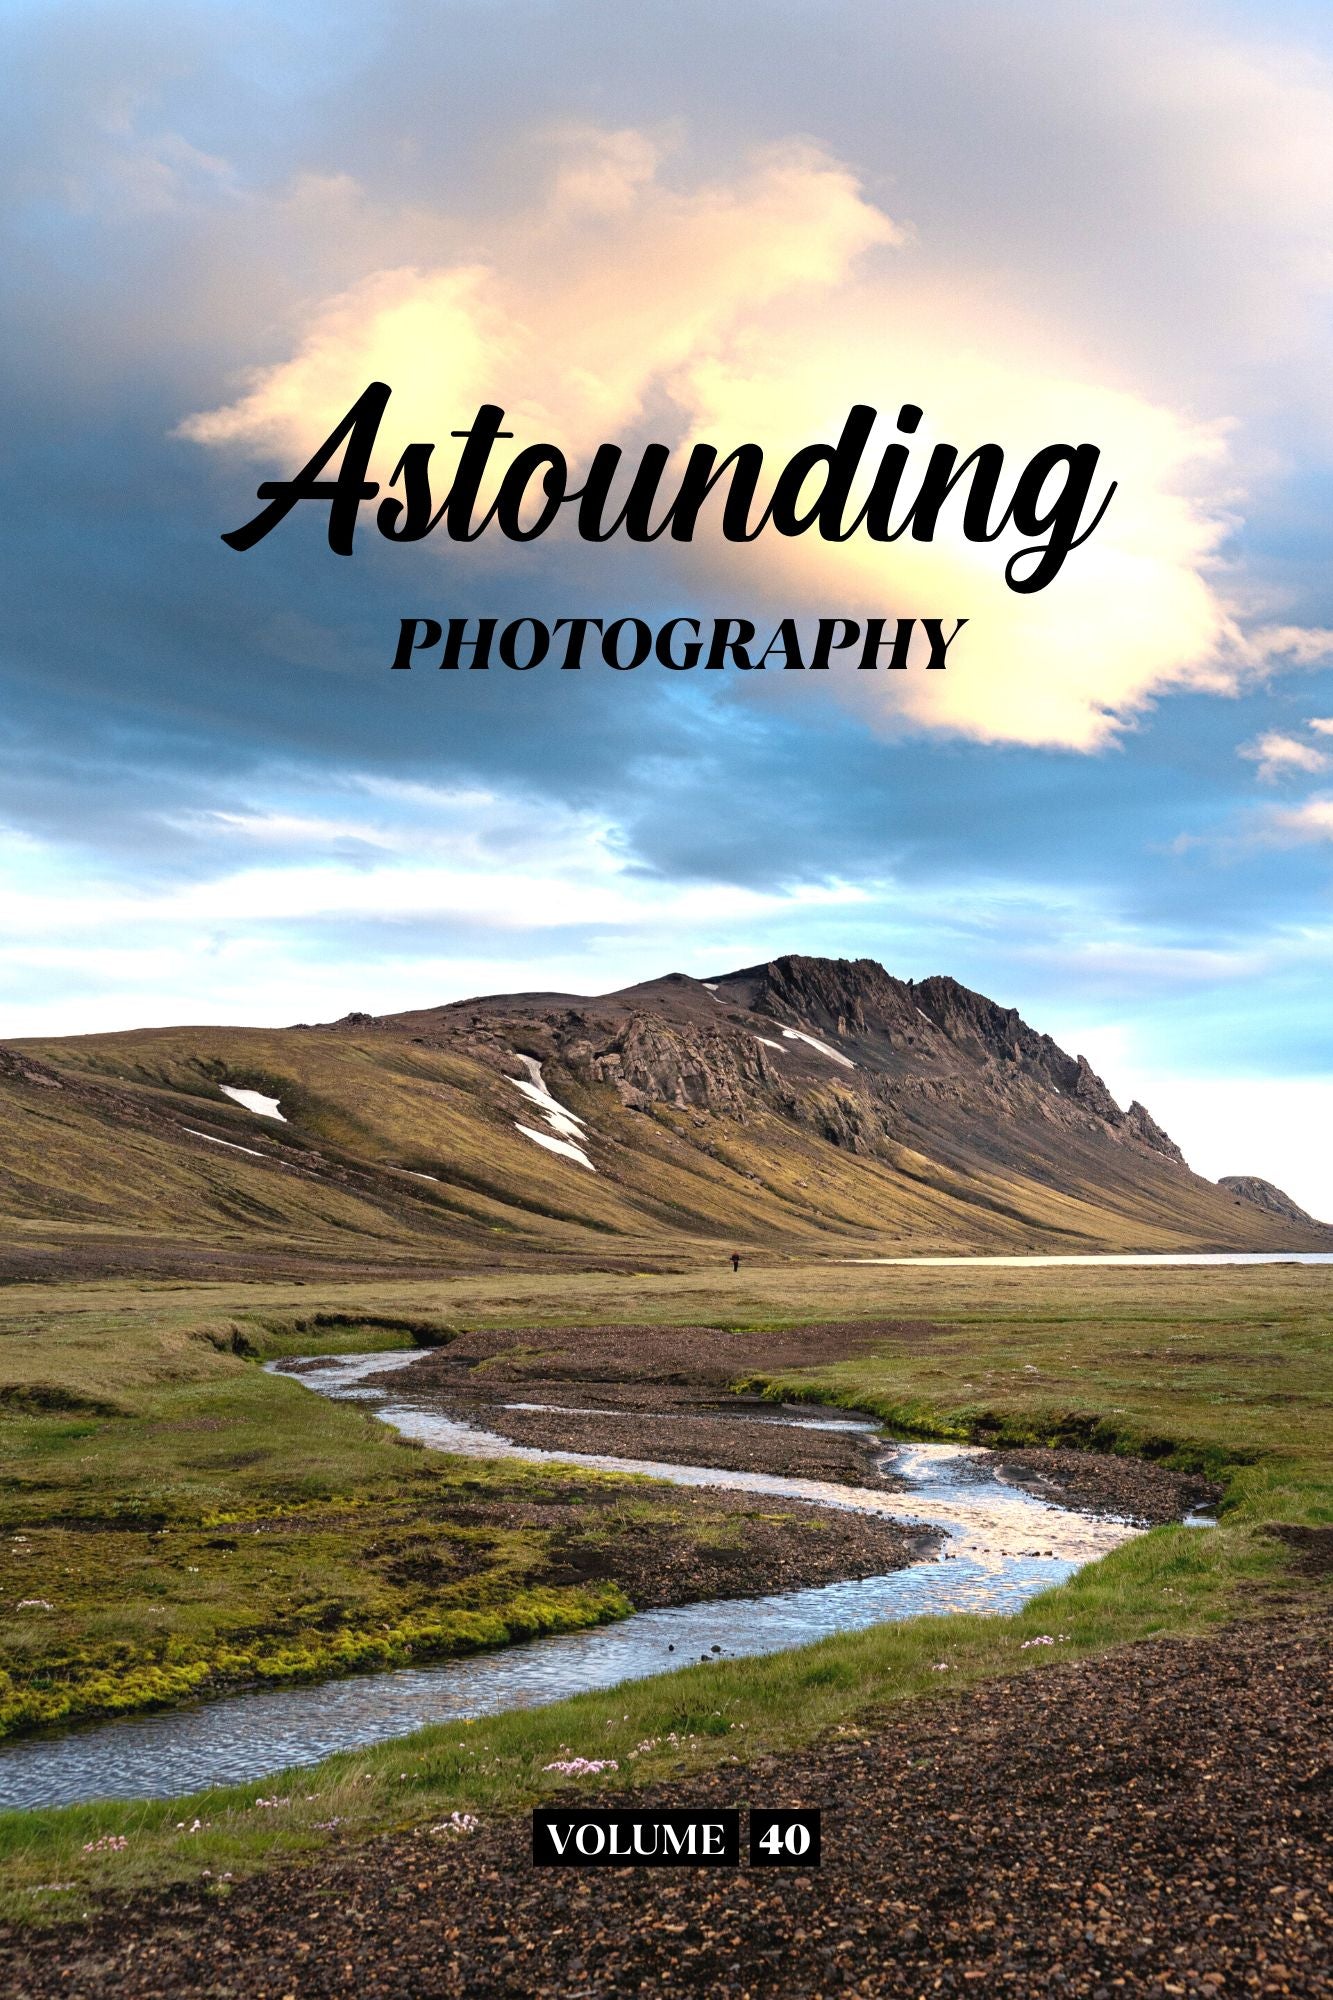 Astounding Photography Volume 40 (Physical Book Pre-Order)